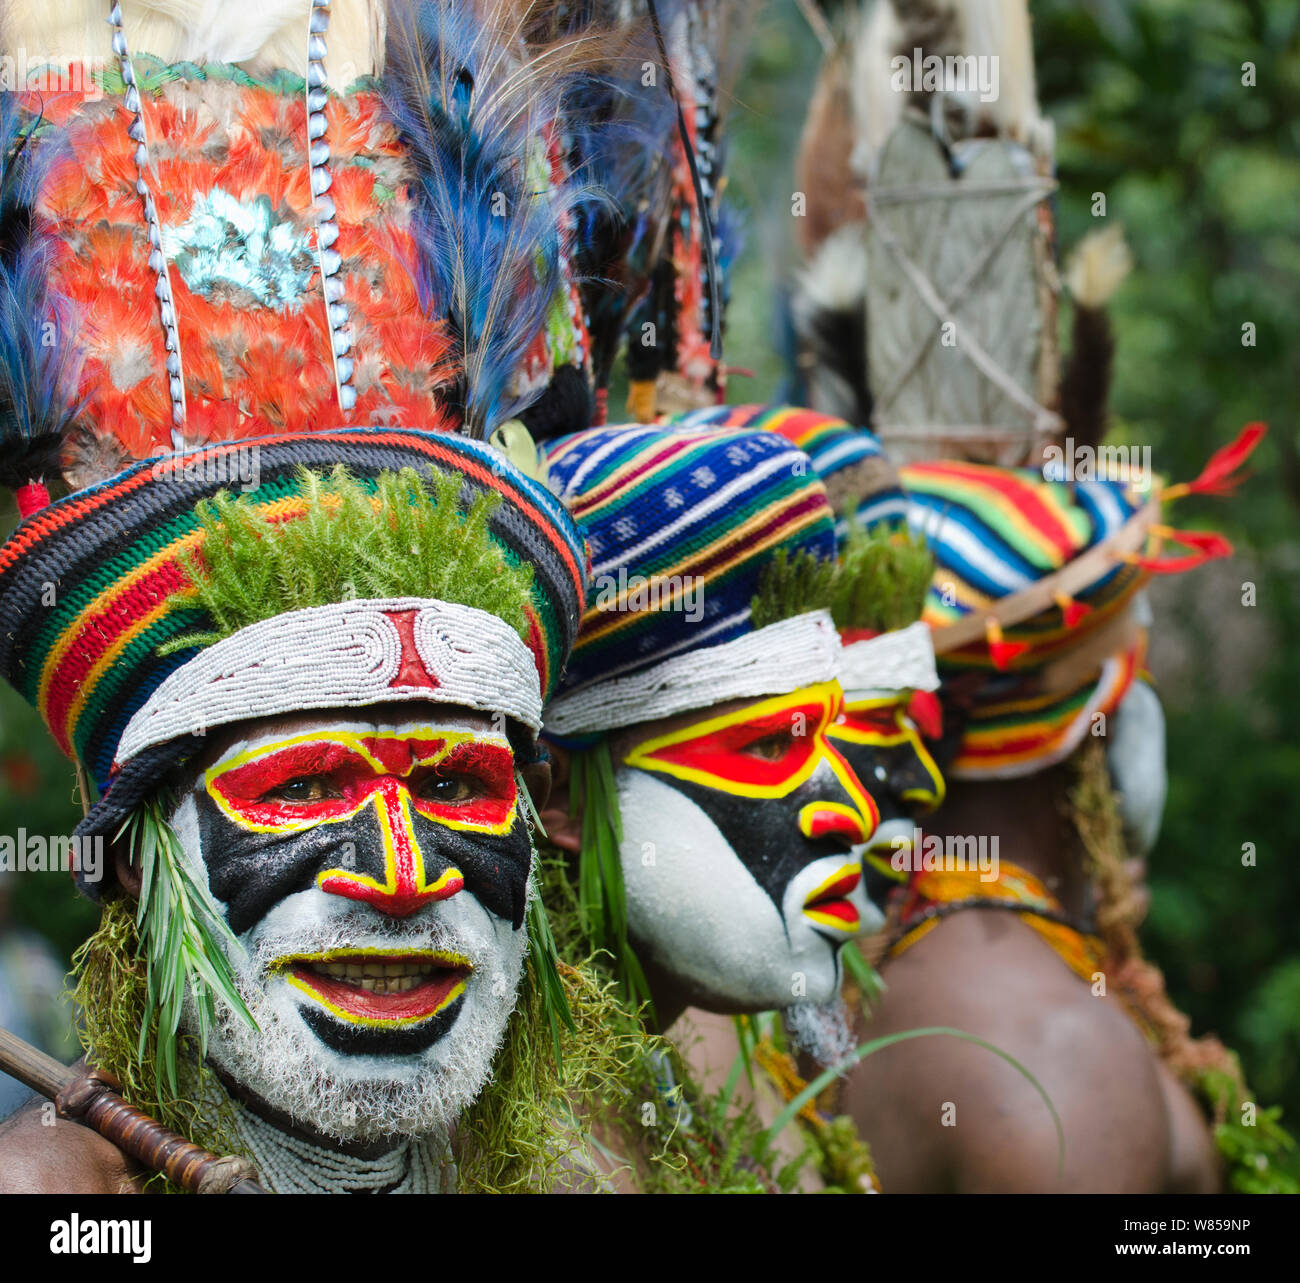 Les artistes interprètes ou exécutants de l'Anglimp Tribal dans District Province Waghi, effectuer à un Sing-sing - Hagen Voir les hautes terres de l'Ouest, la Papouasie-Nouvelle-Guinée, Août 2011 Banque D'Images